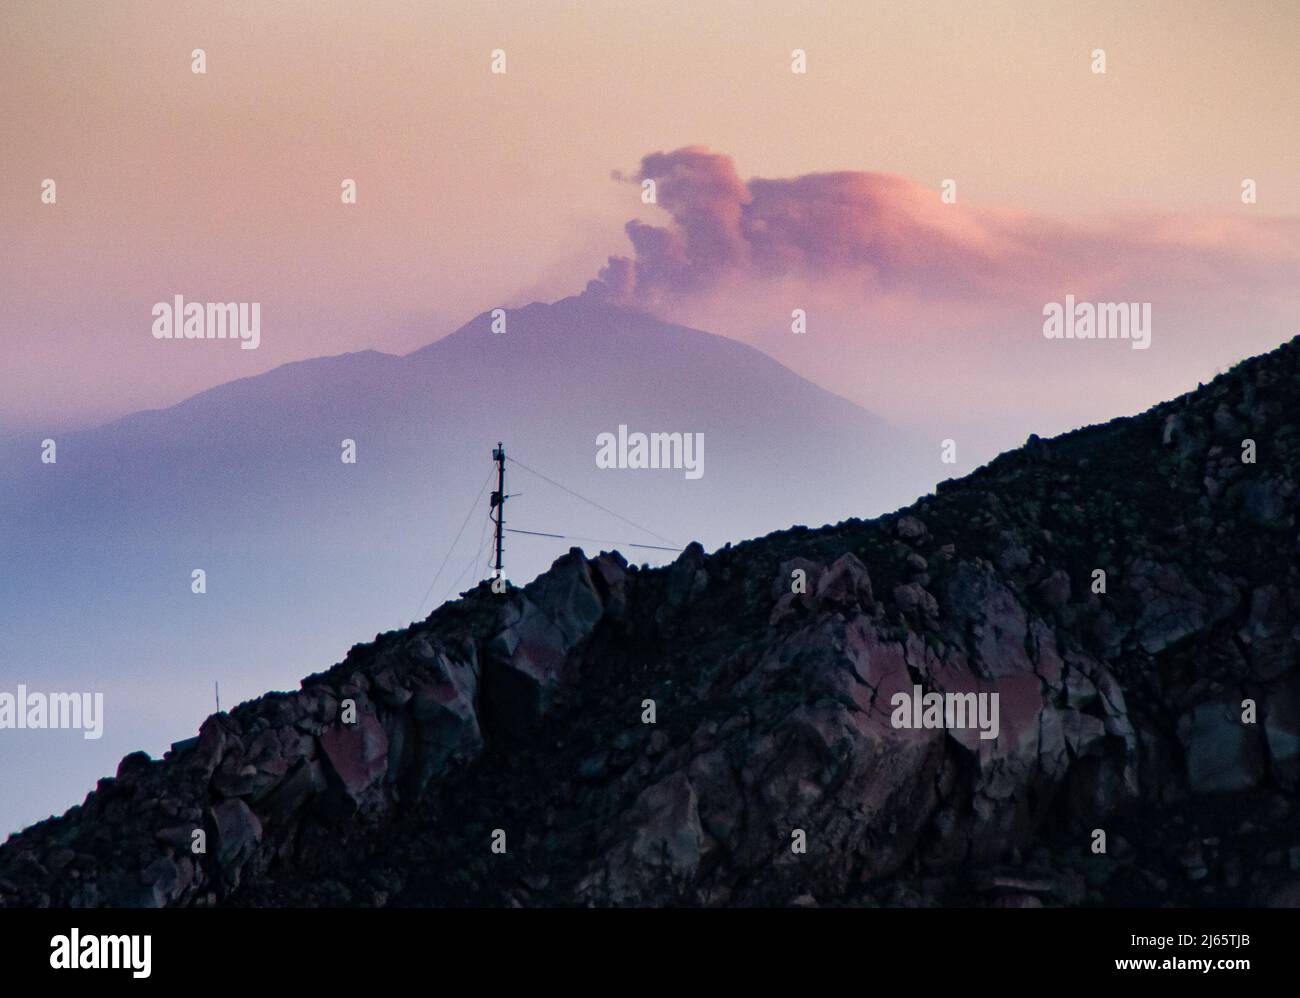 Heftiger Vulkanausbruch am Ätna, gesehen von der Insel Stromboli - paroxysme sur le Mont Etna, vue de l'île de Stromboli Banque D'Images